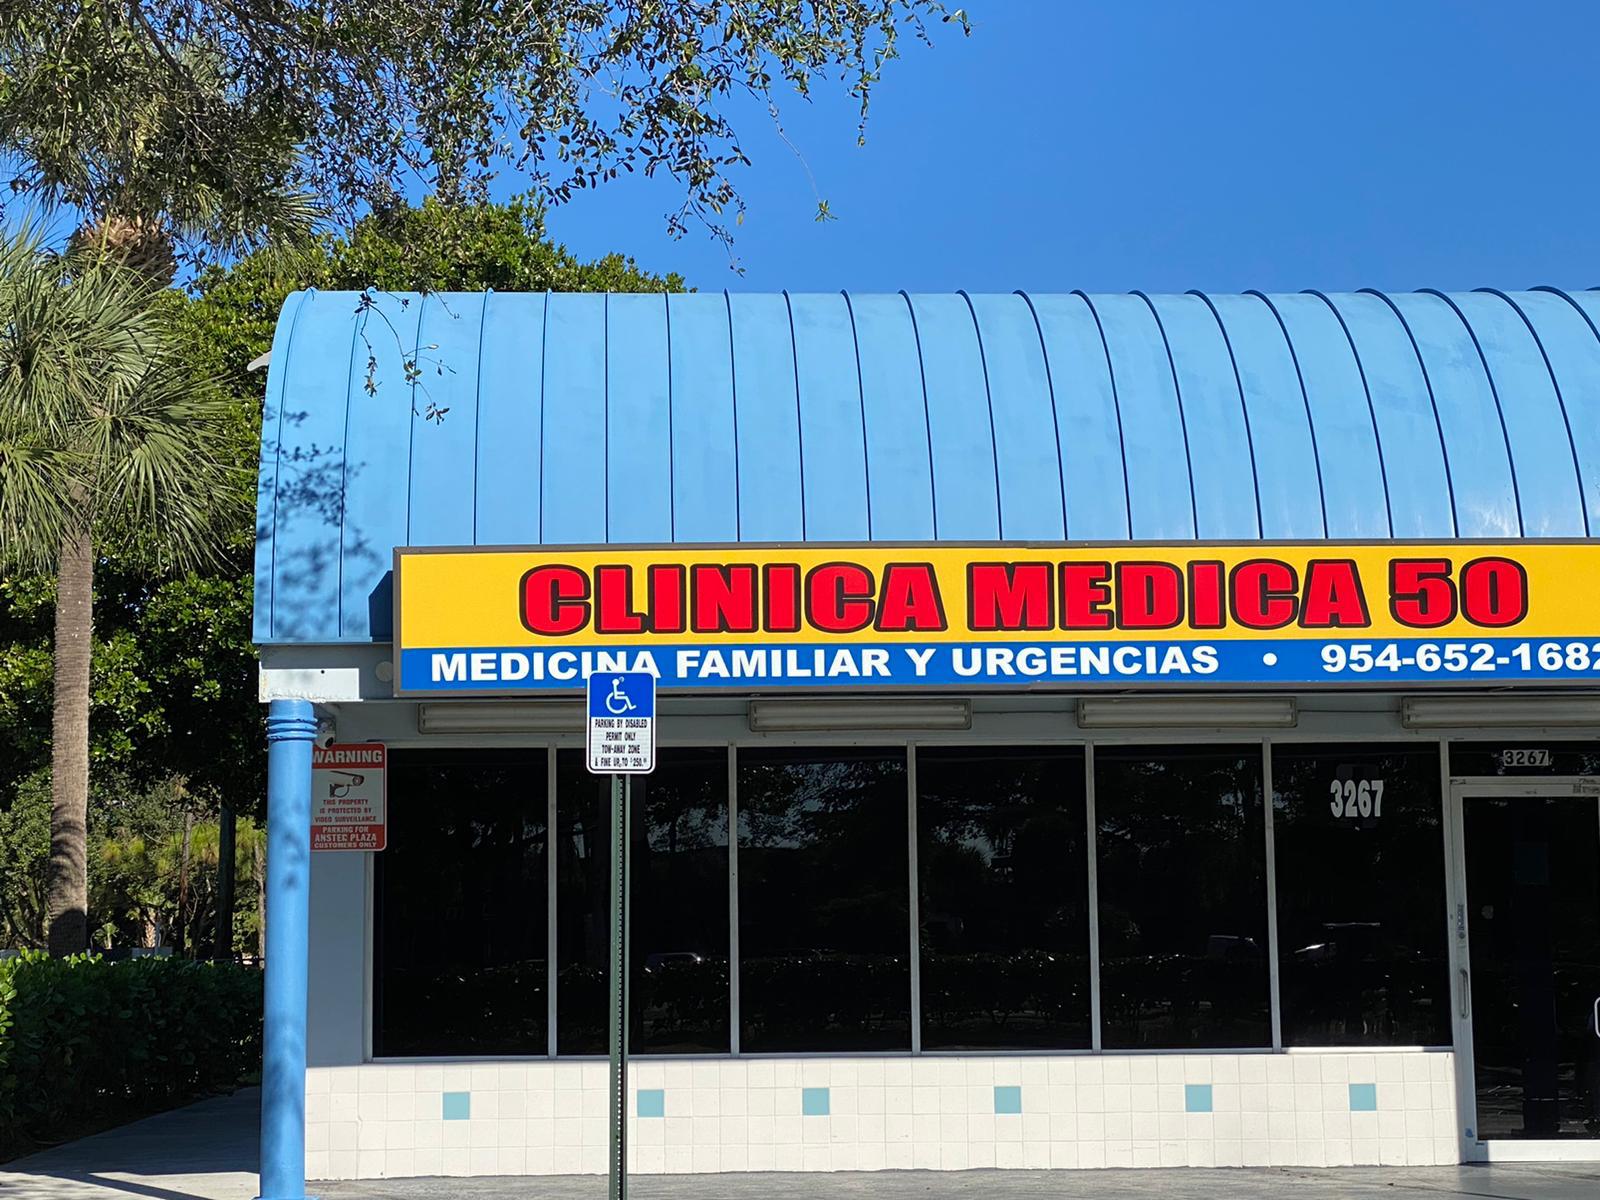 clinica medica hispana near me